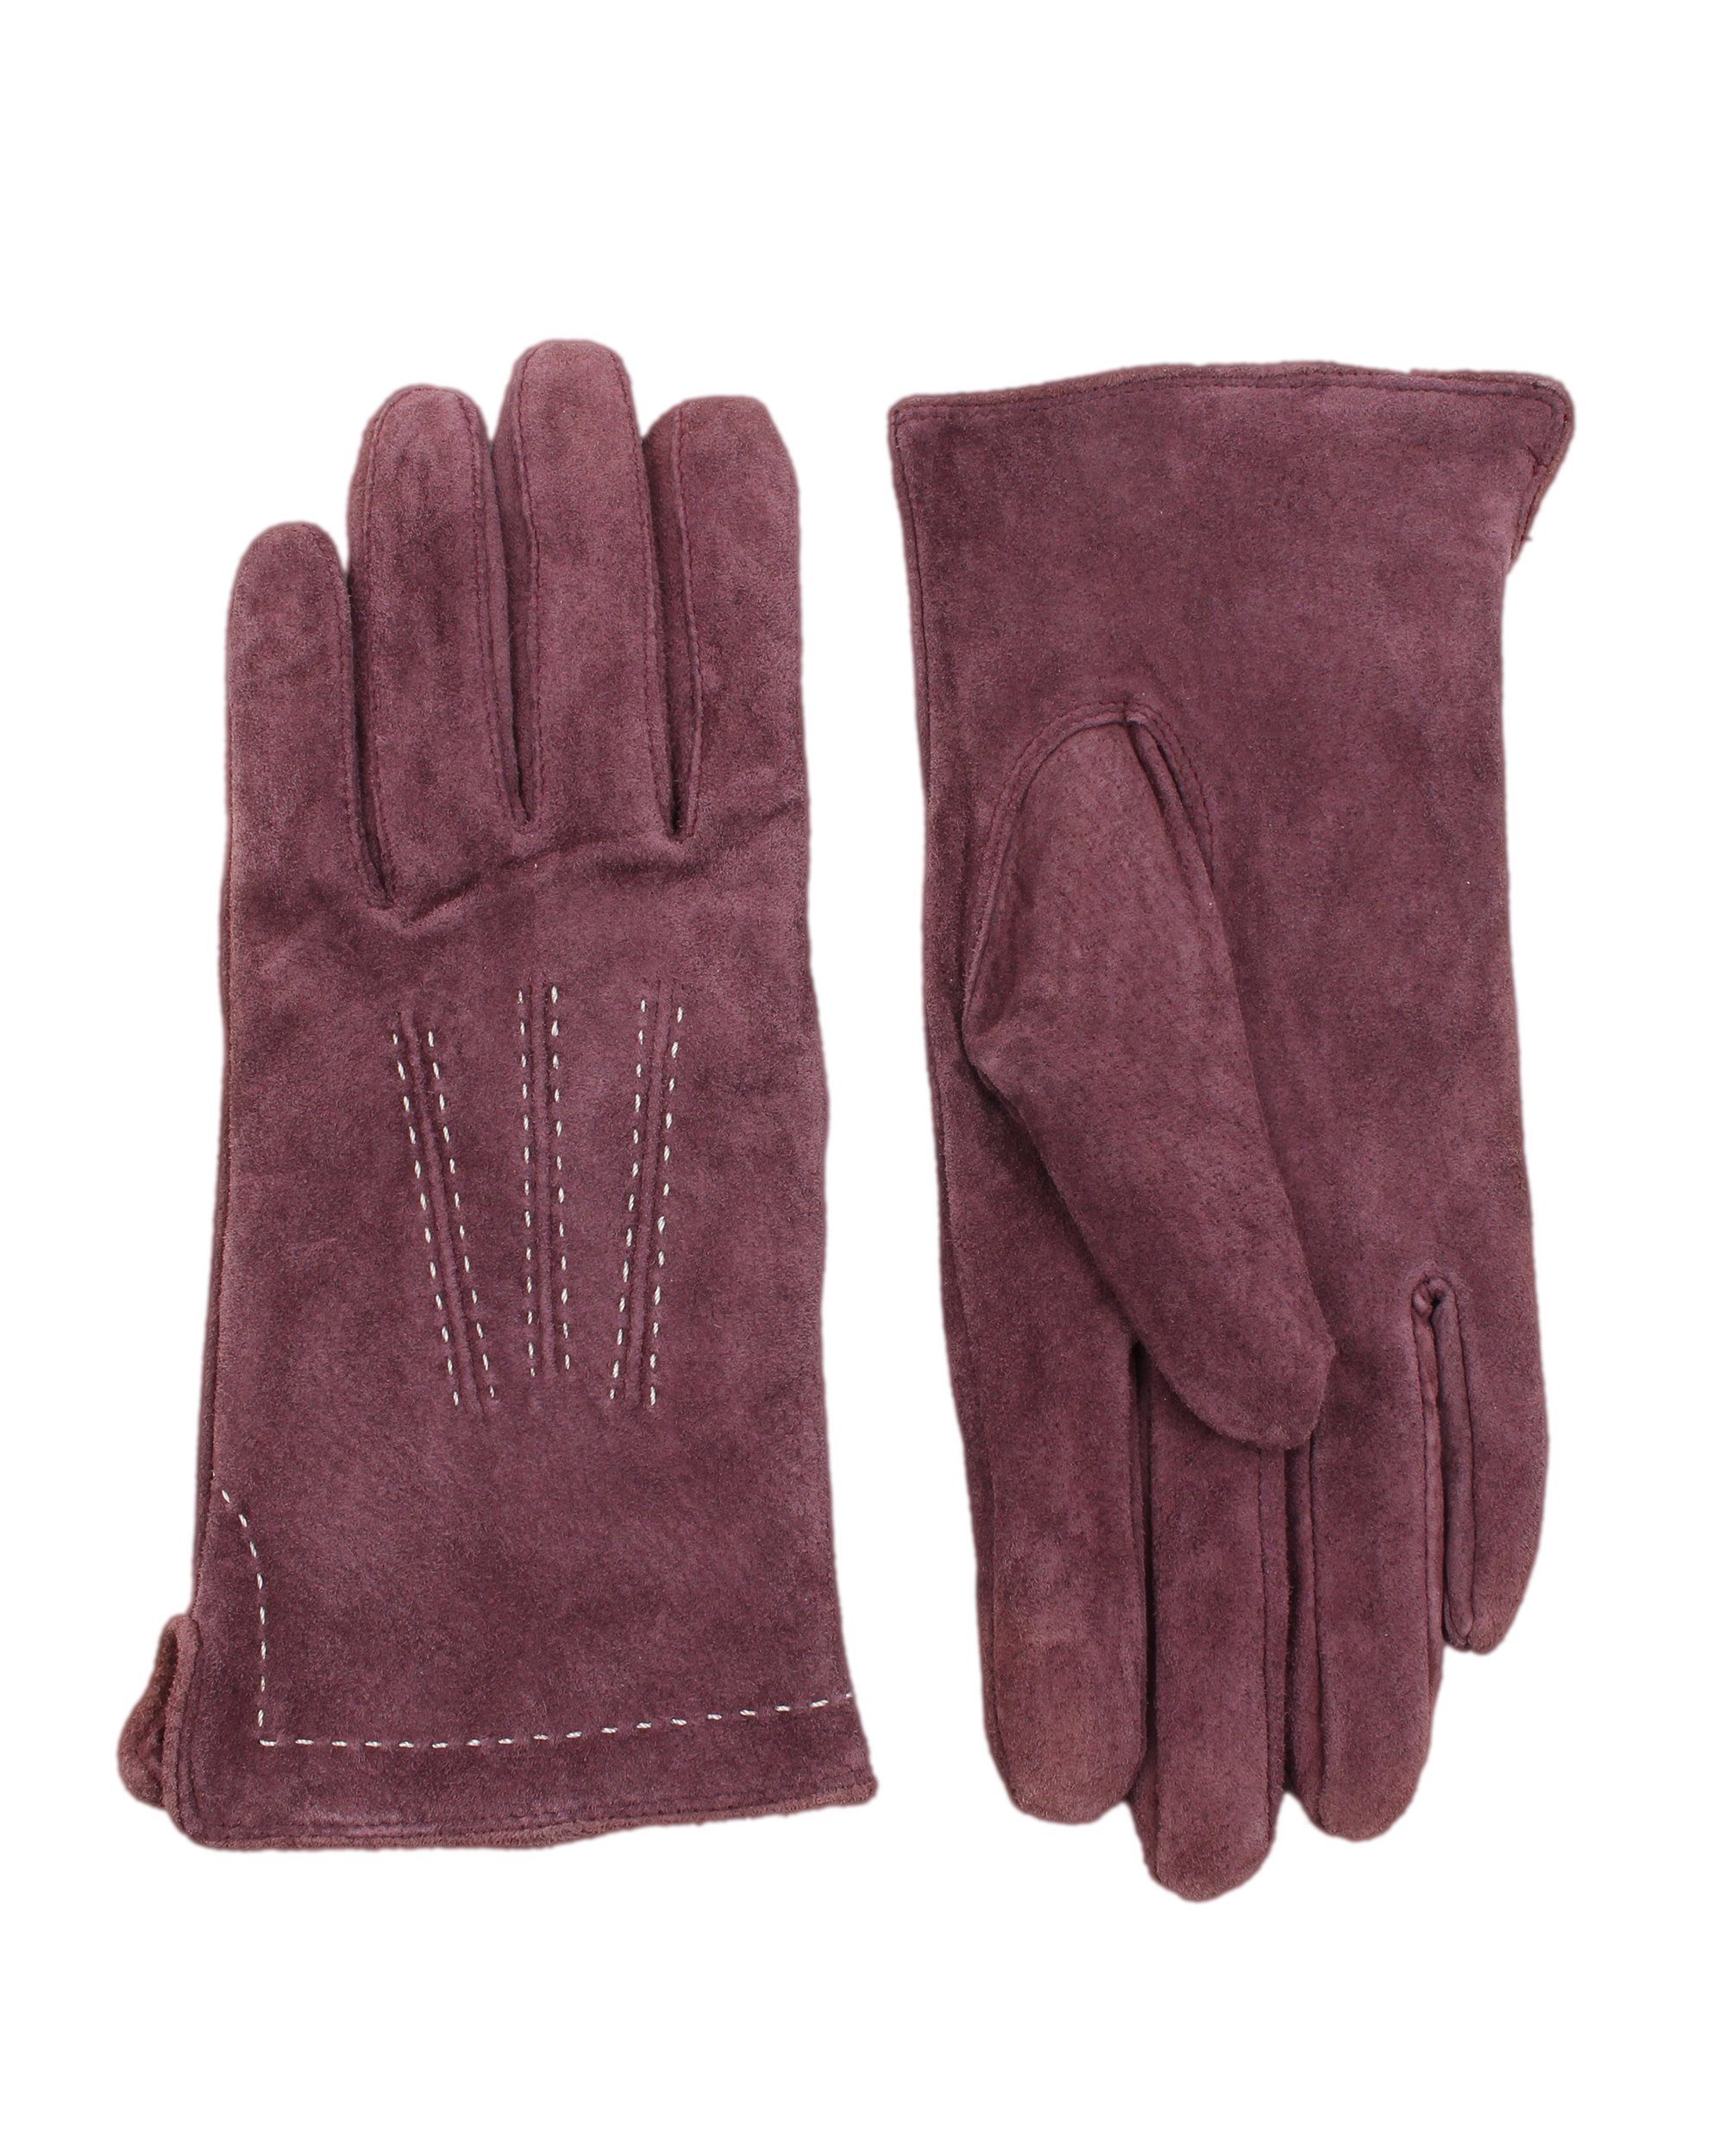 ZEBRO Velourleder Lederhandschuhe Handschuh